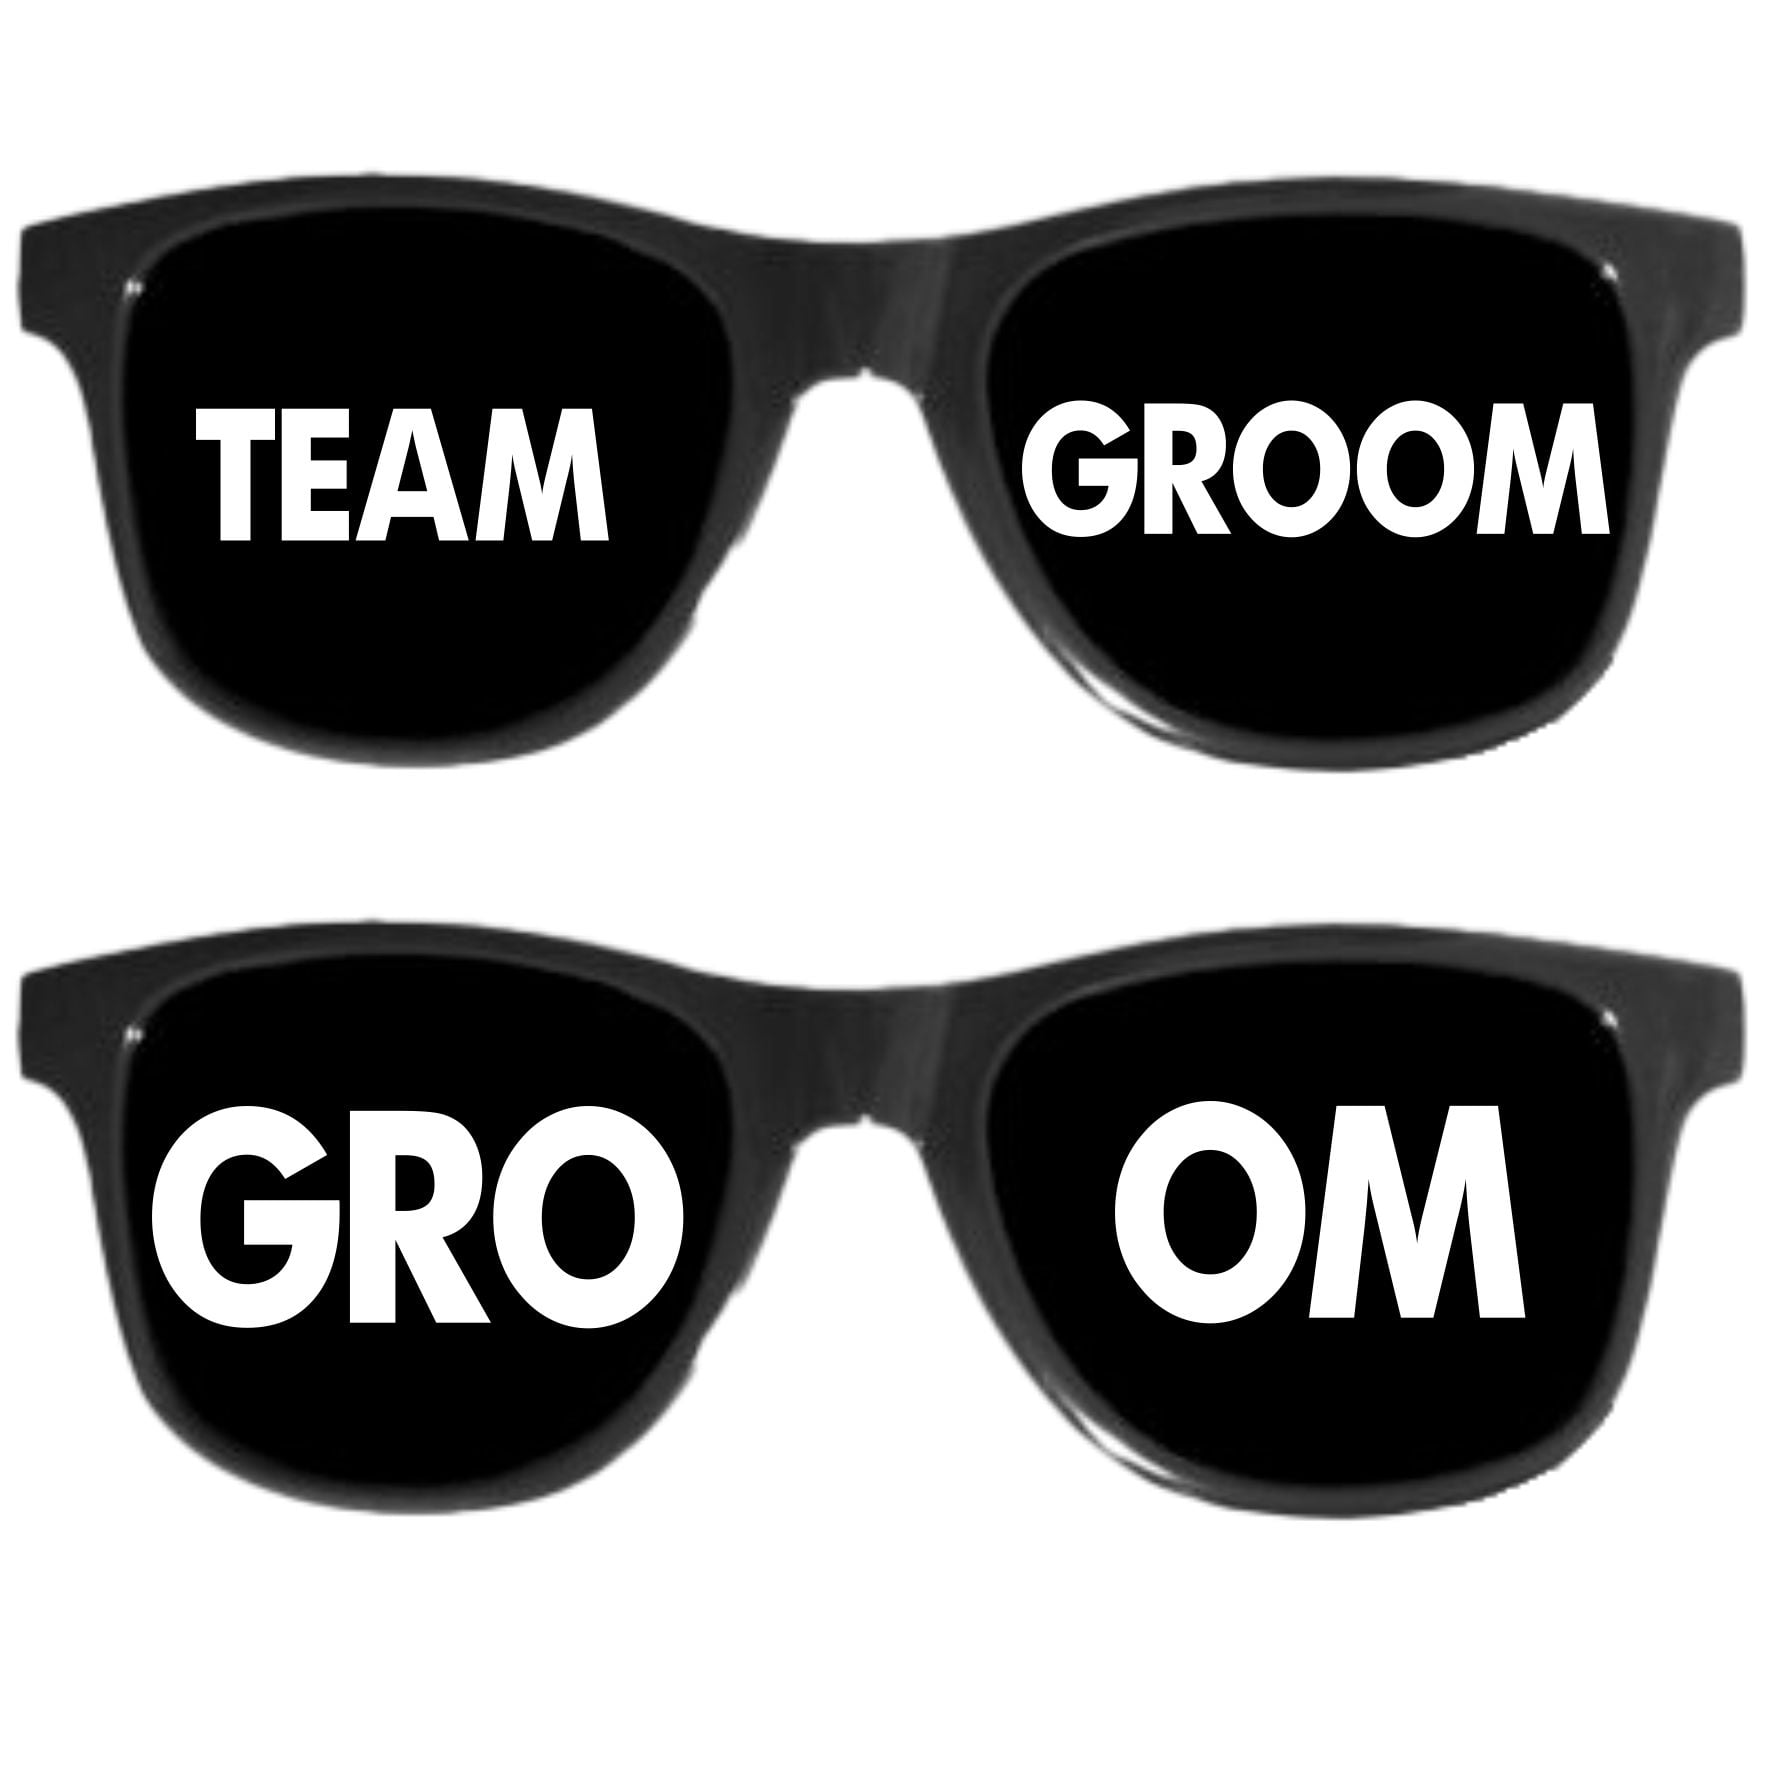 Óculos Despedida de Solteiro Team Groom - GRÁTIS ÓCULOS DO NOIVO